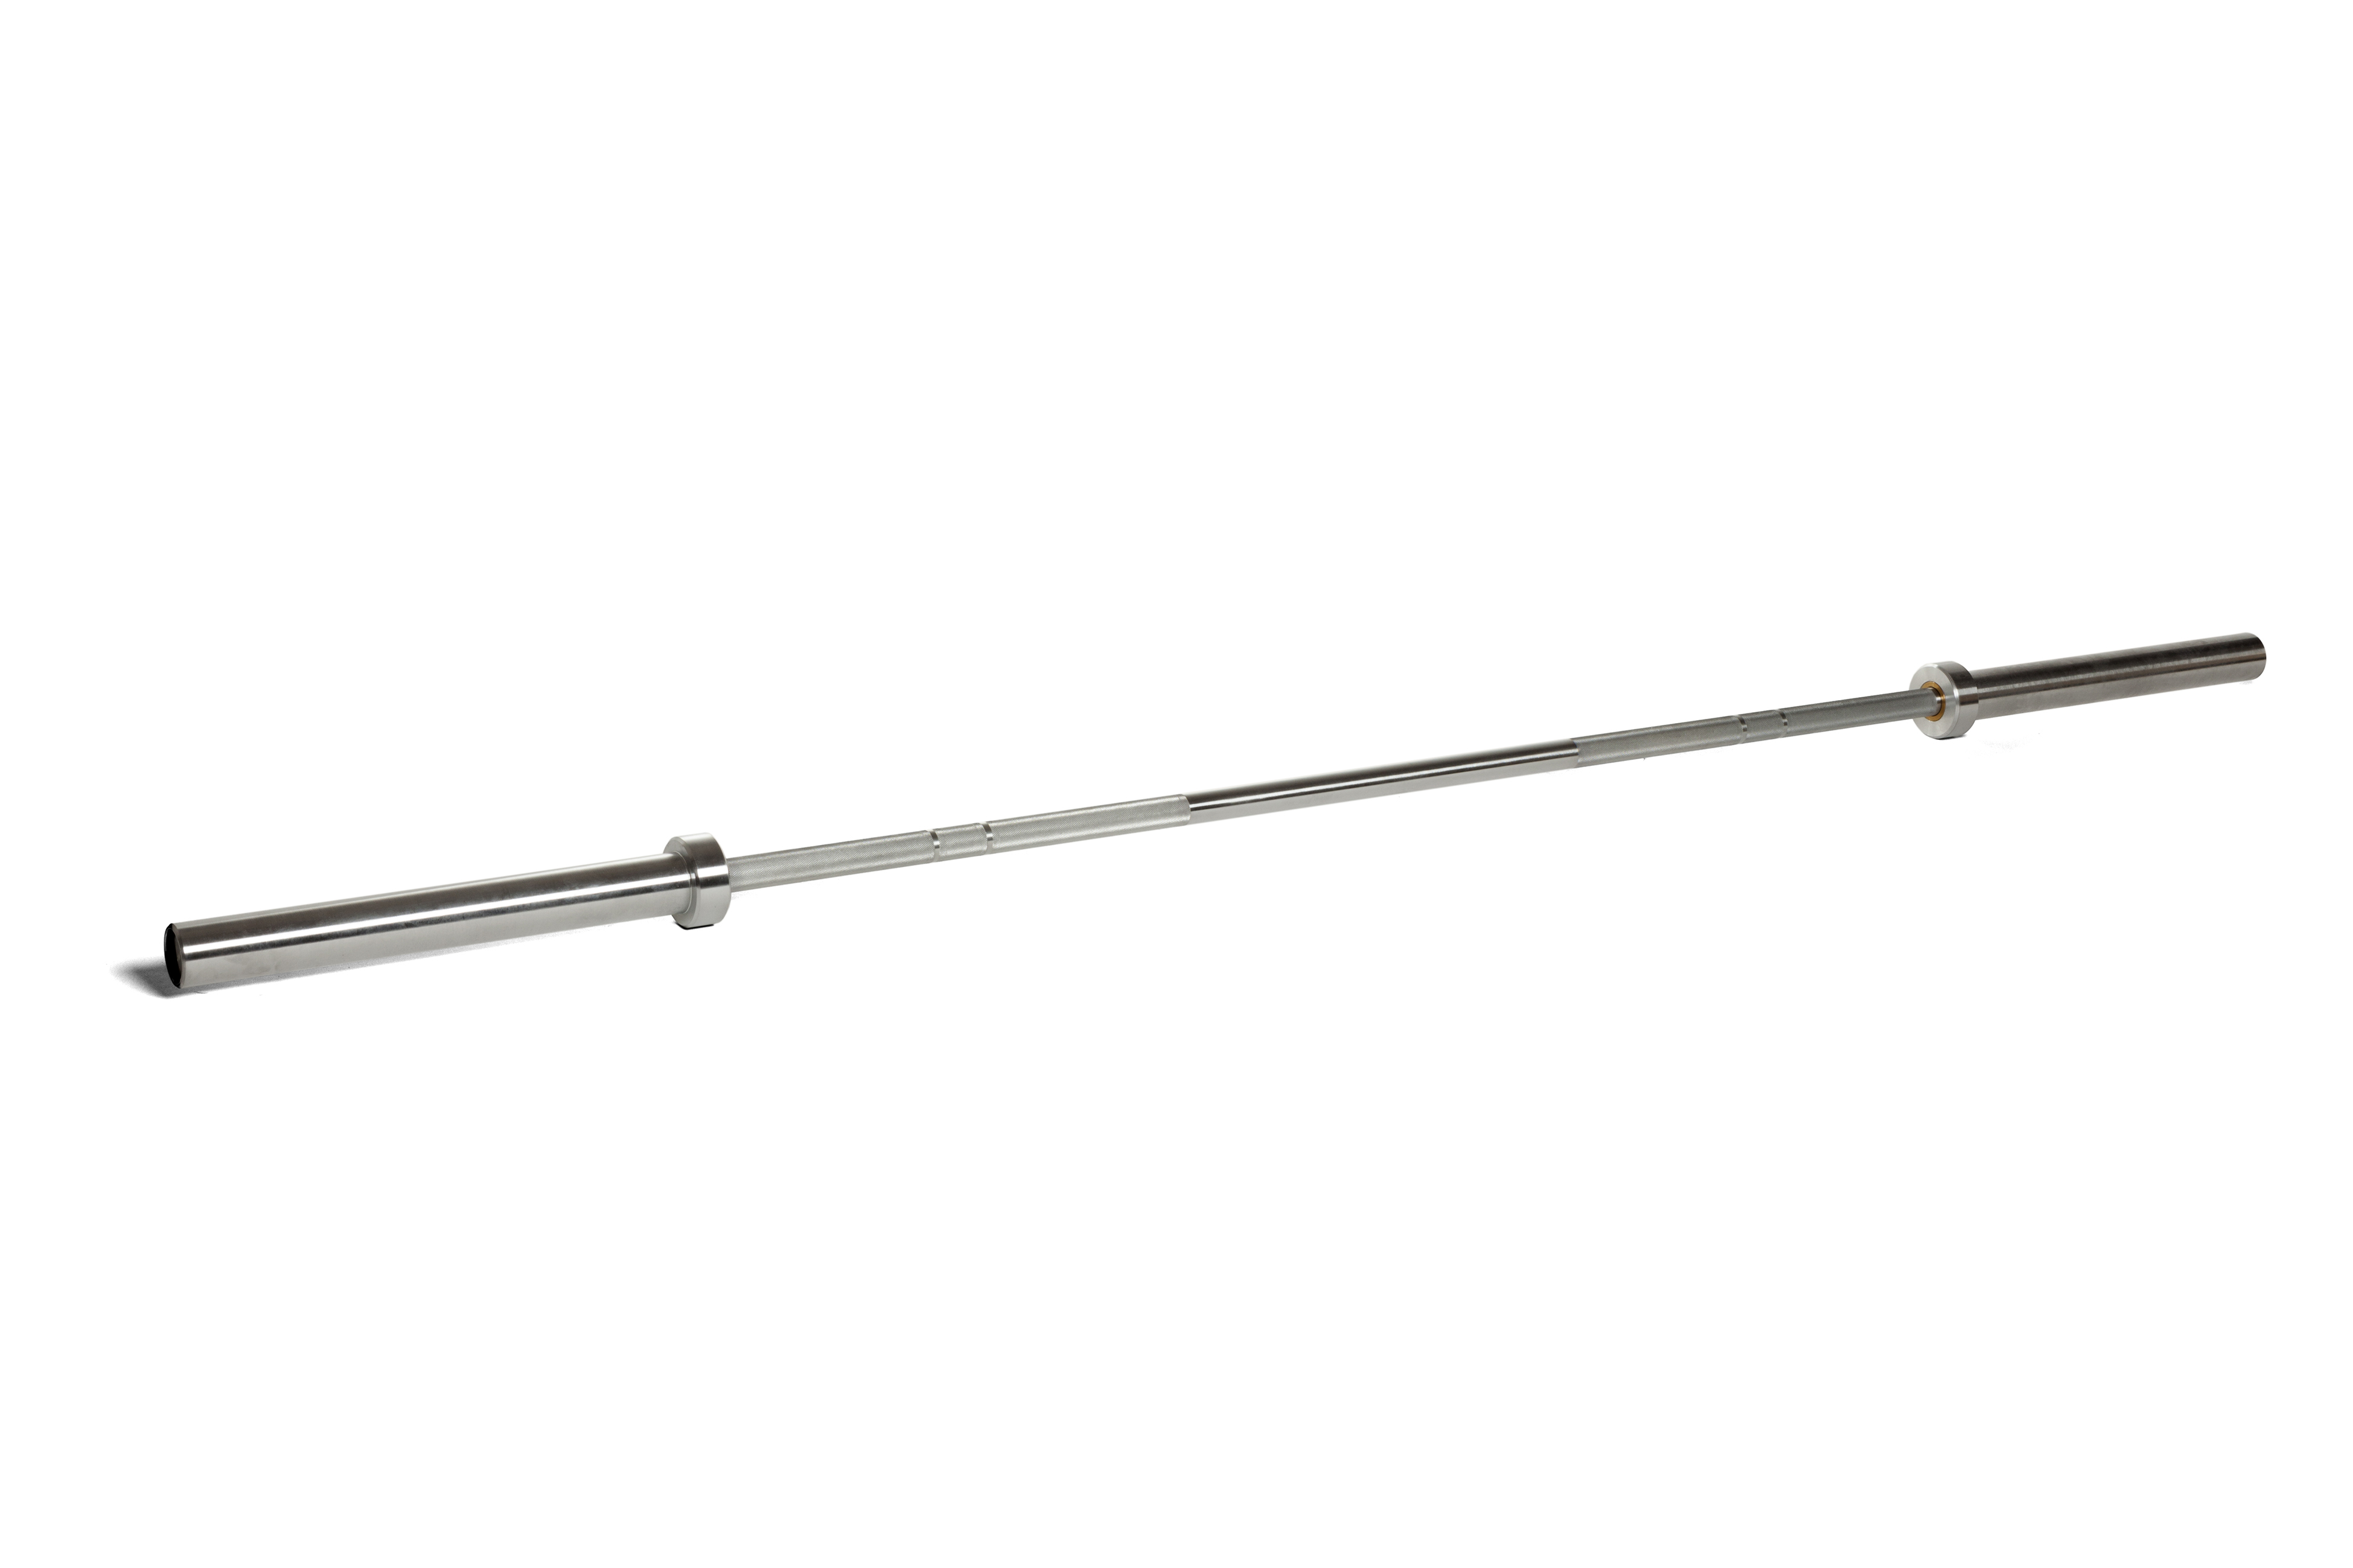 Kwell Barbell - BAR KROSS HOMME - 220 cm x 50 mm - 20 kg